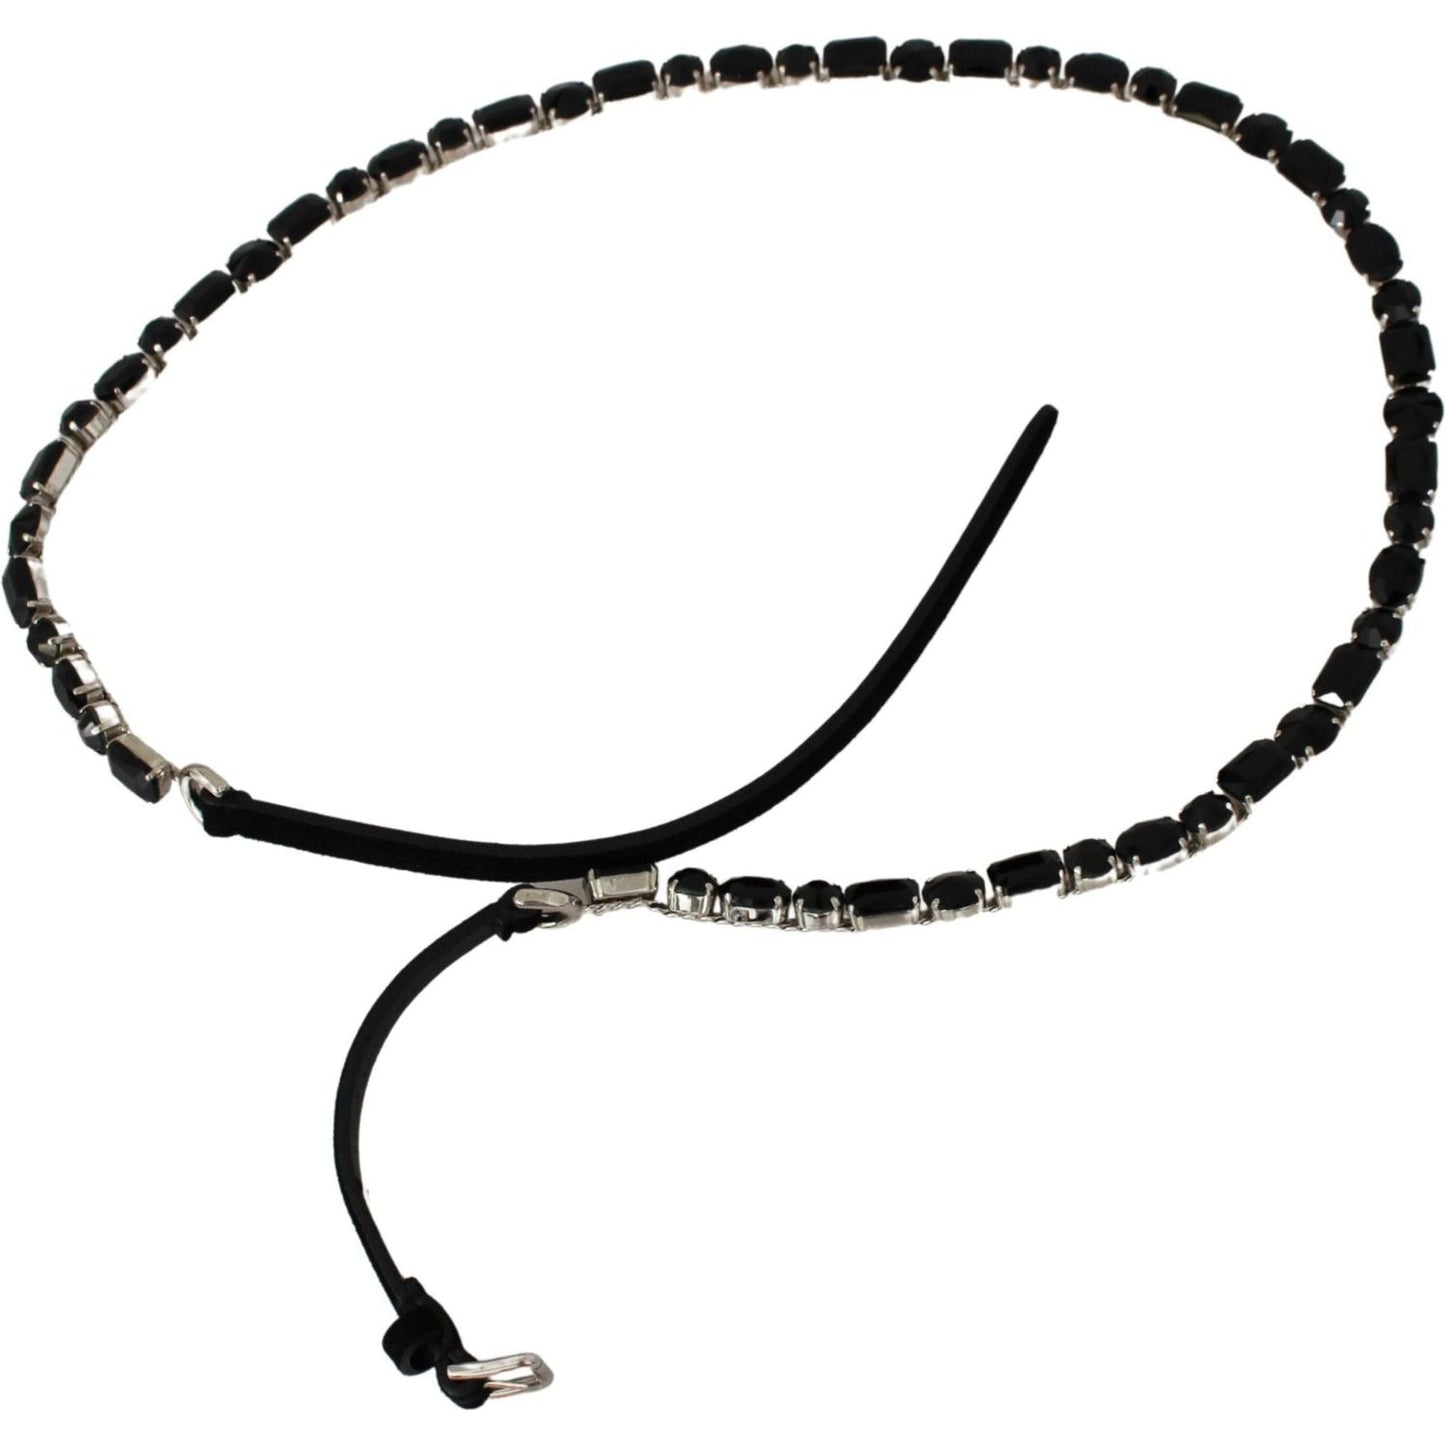 Dolce & Gabbana Luxurious Black Crystal-Embellished Leather Belt black-leather-crystals-waist-belt